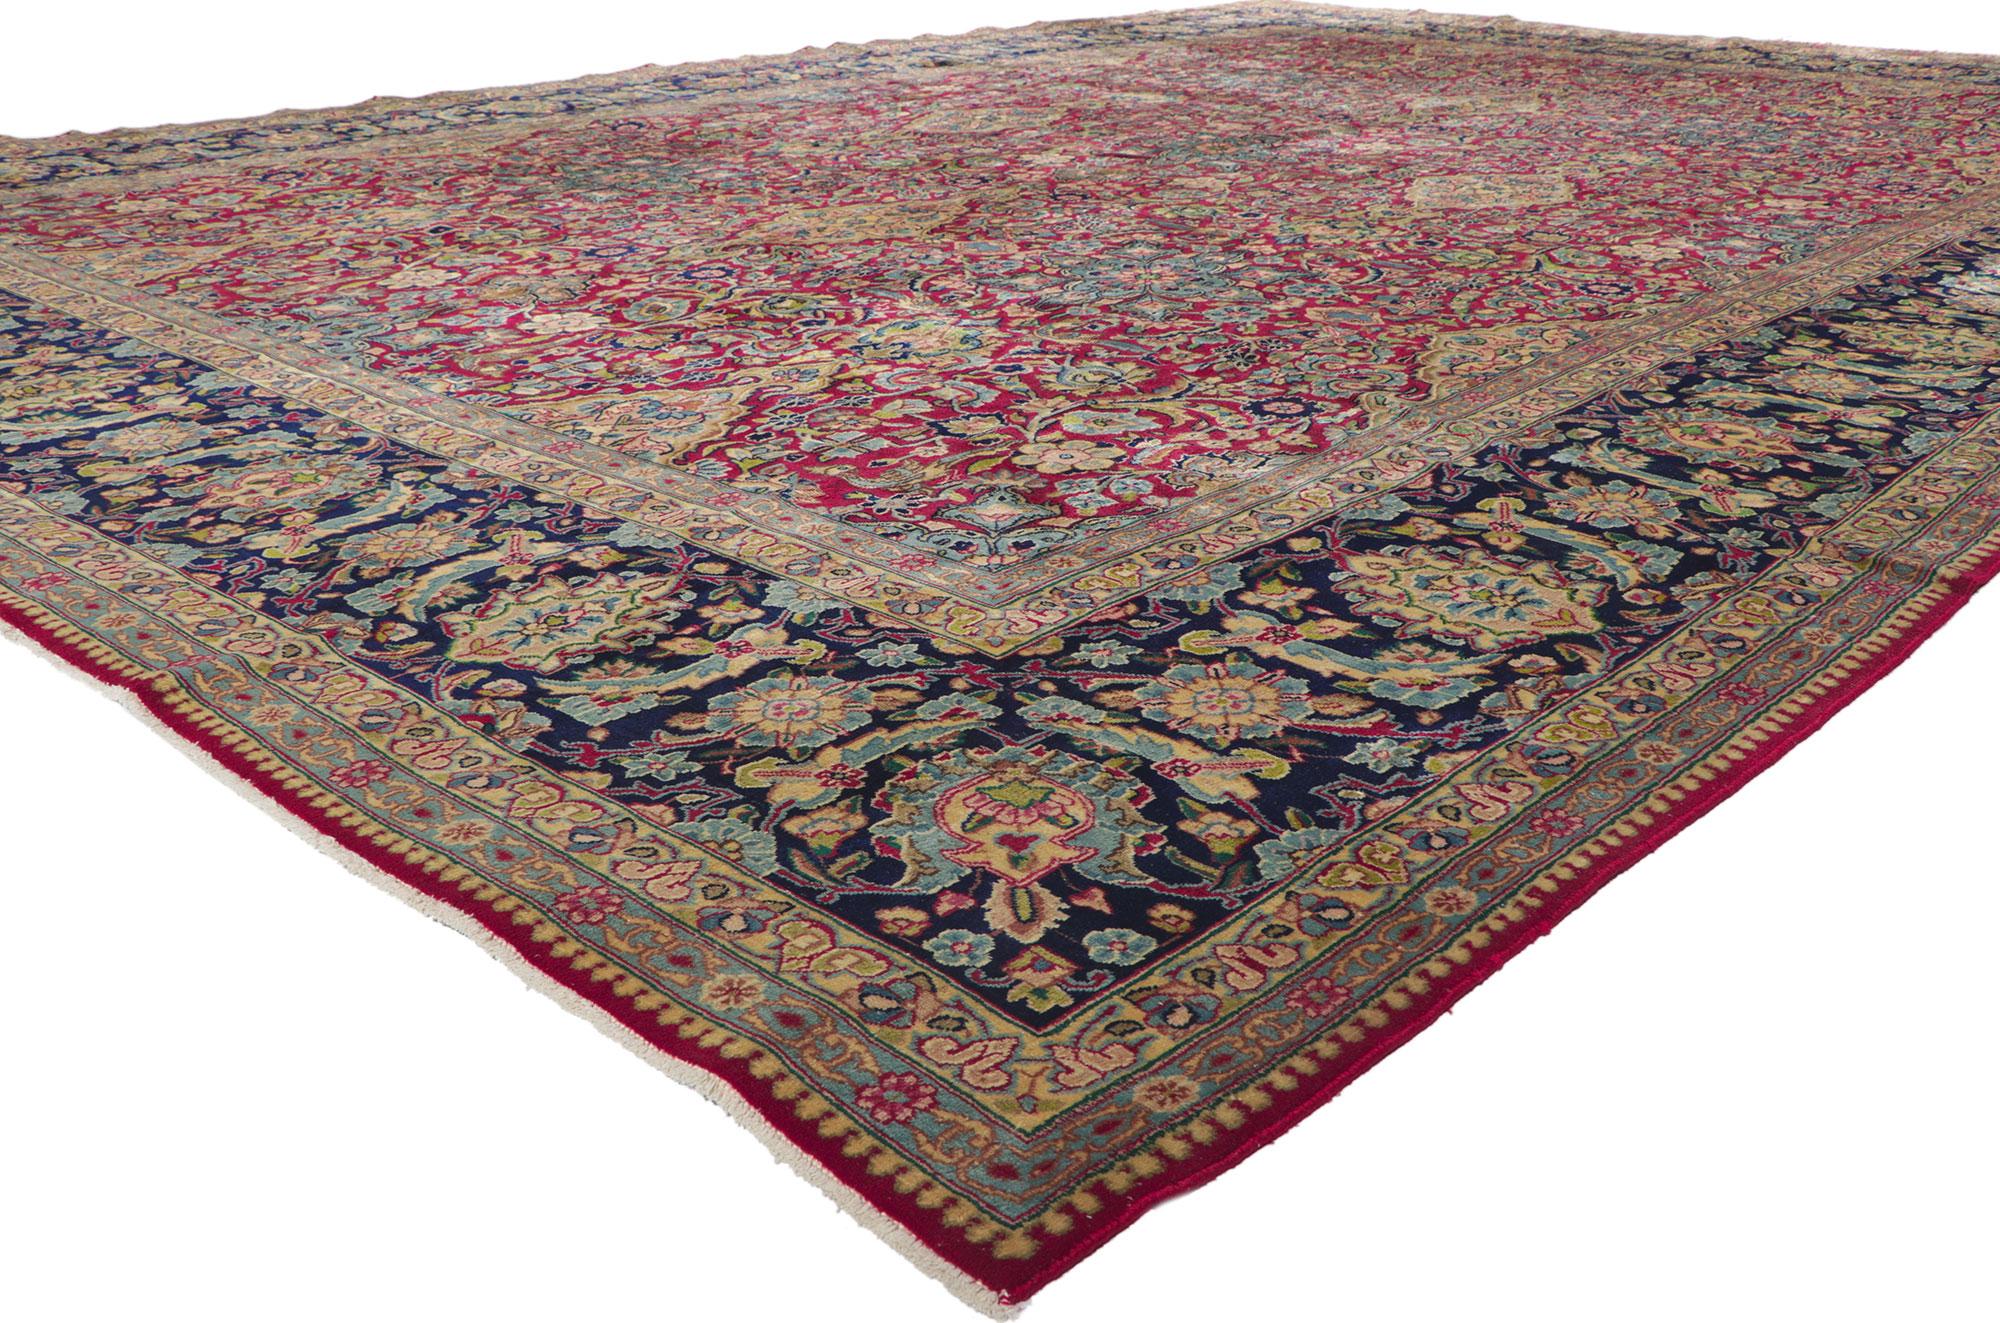 61193 Tapis Persan Vintage Kerman, 11'06 x 16'03. Avec ses détails et sa texture incroyables, ce tapis persan Kerman en laine nouée à la main est une vision captivante de la beauté tissée. Le design botanique intemporel et la palette de couleurs